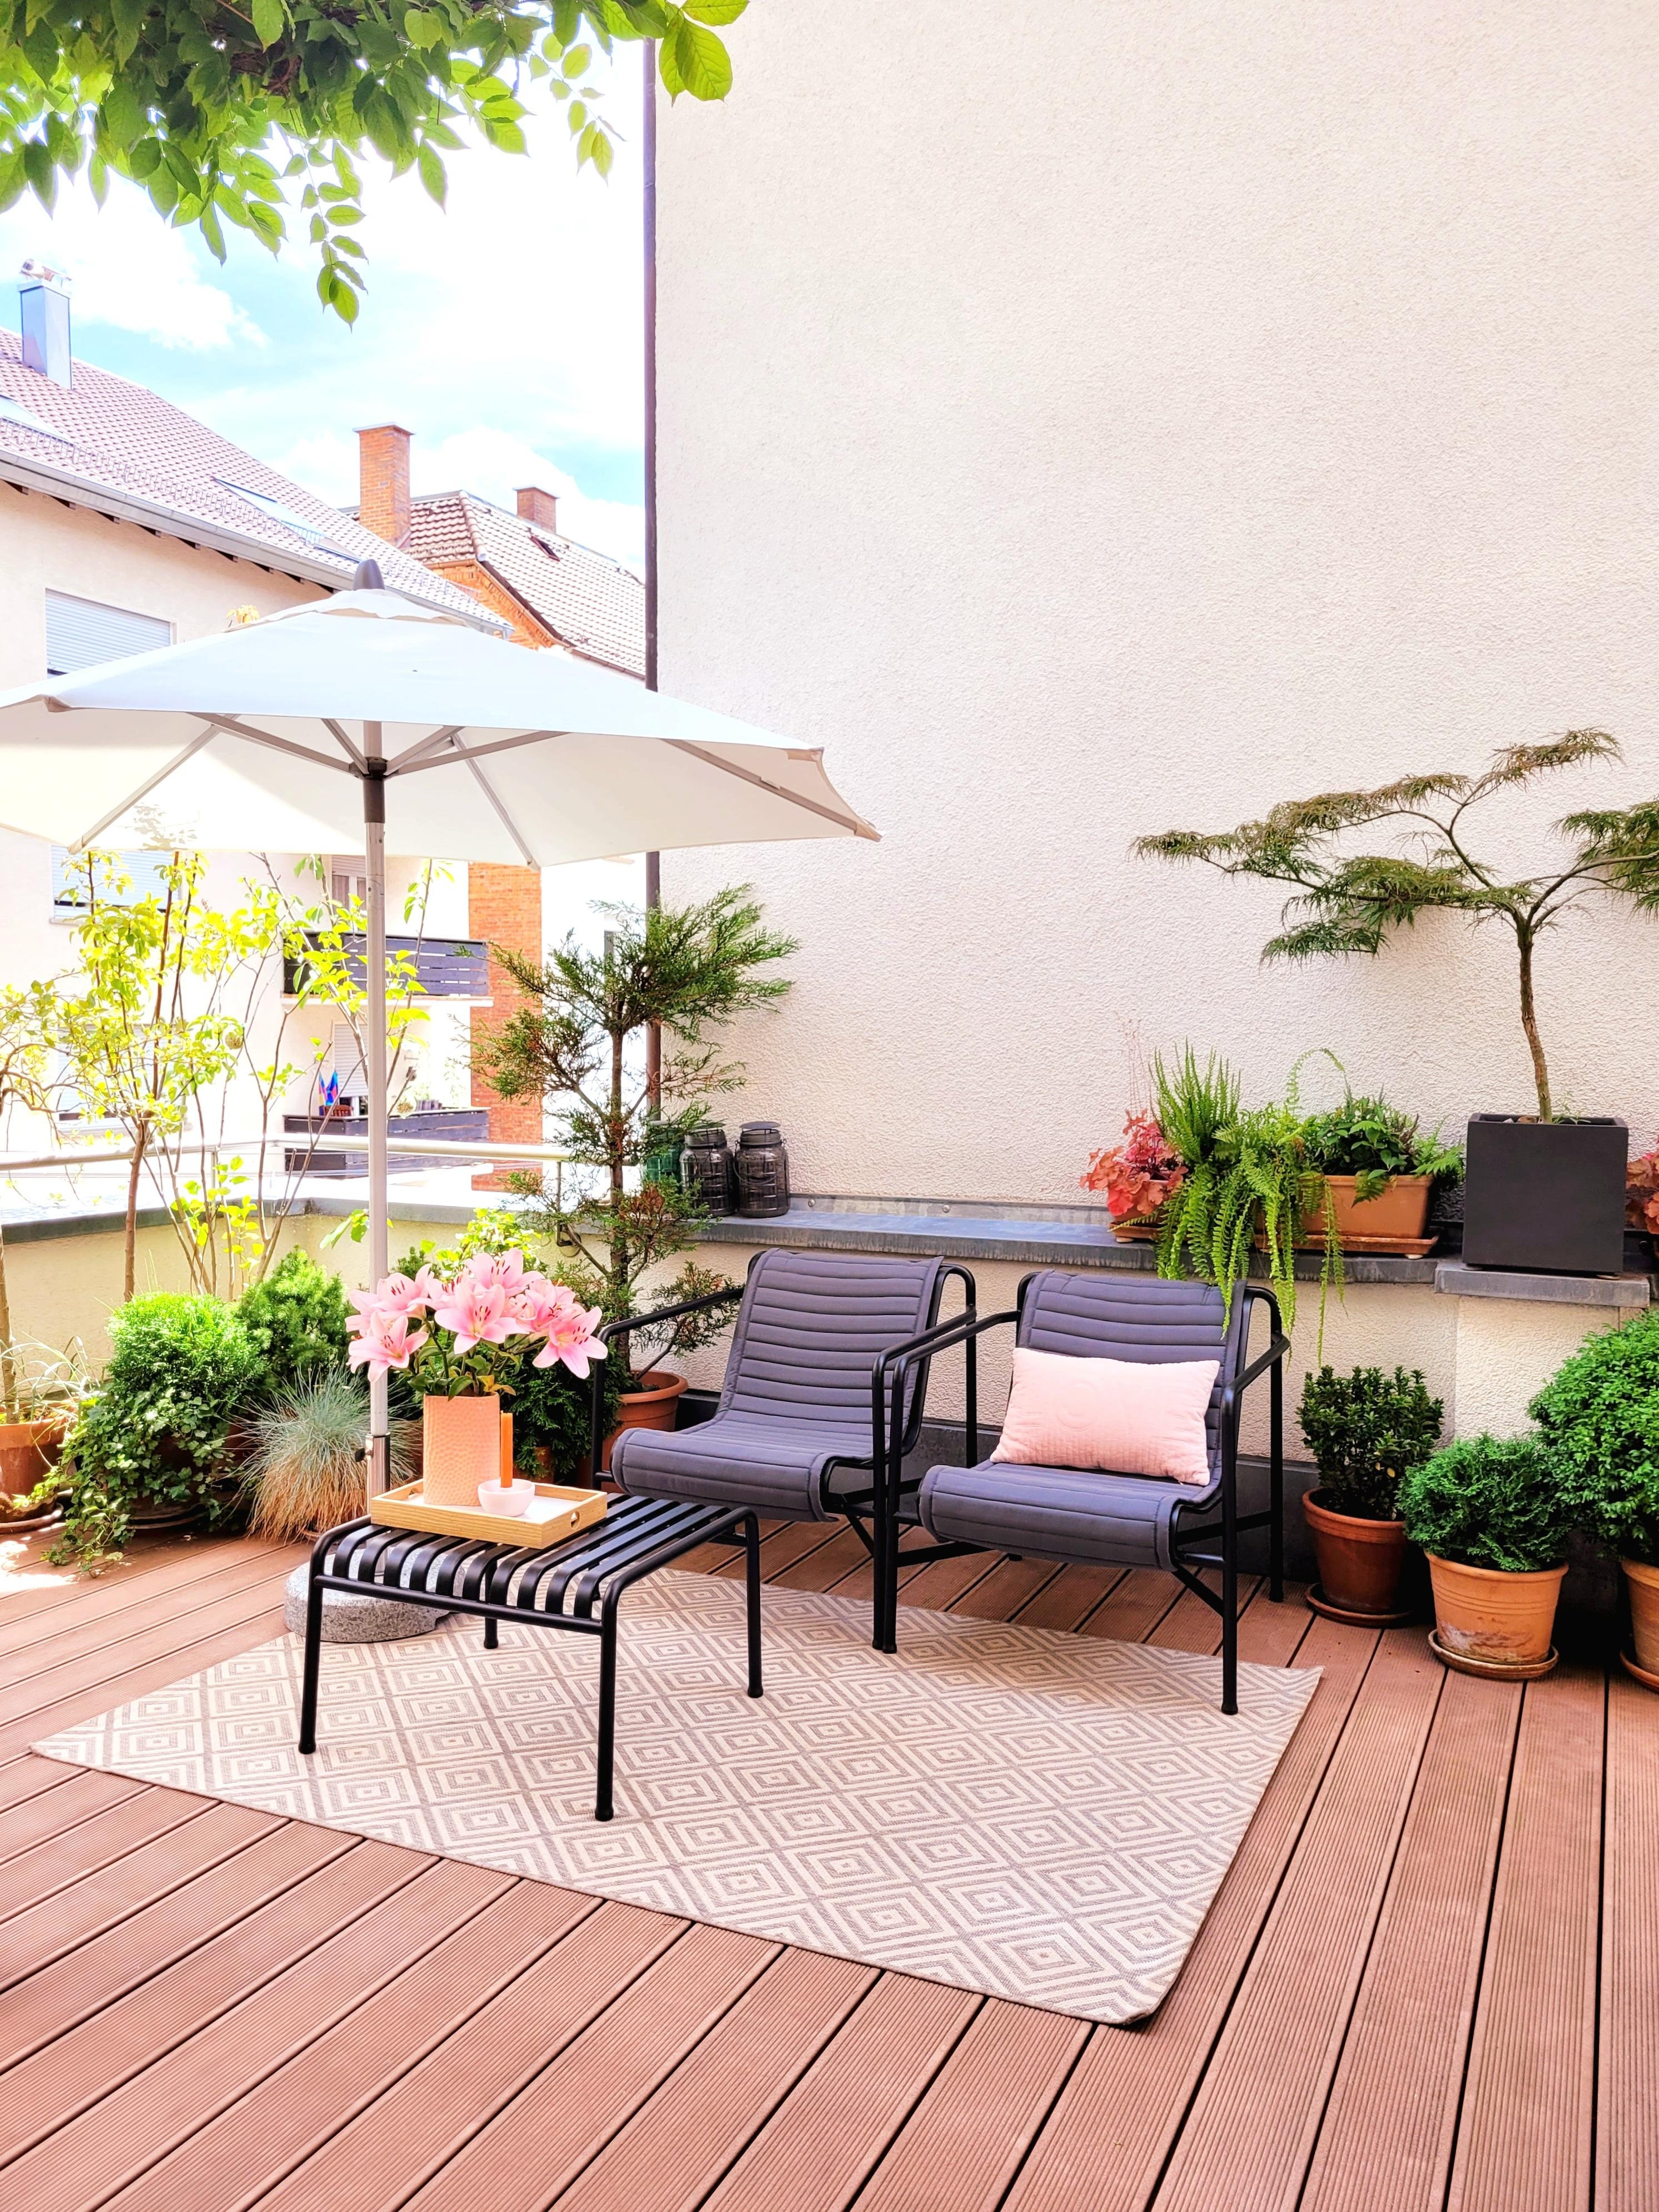 #Altbau #Design #Terrasse #Balkon #Erker #Farbenfroh #Blumen #Vasen liebe #gemütlich 